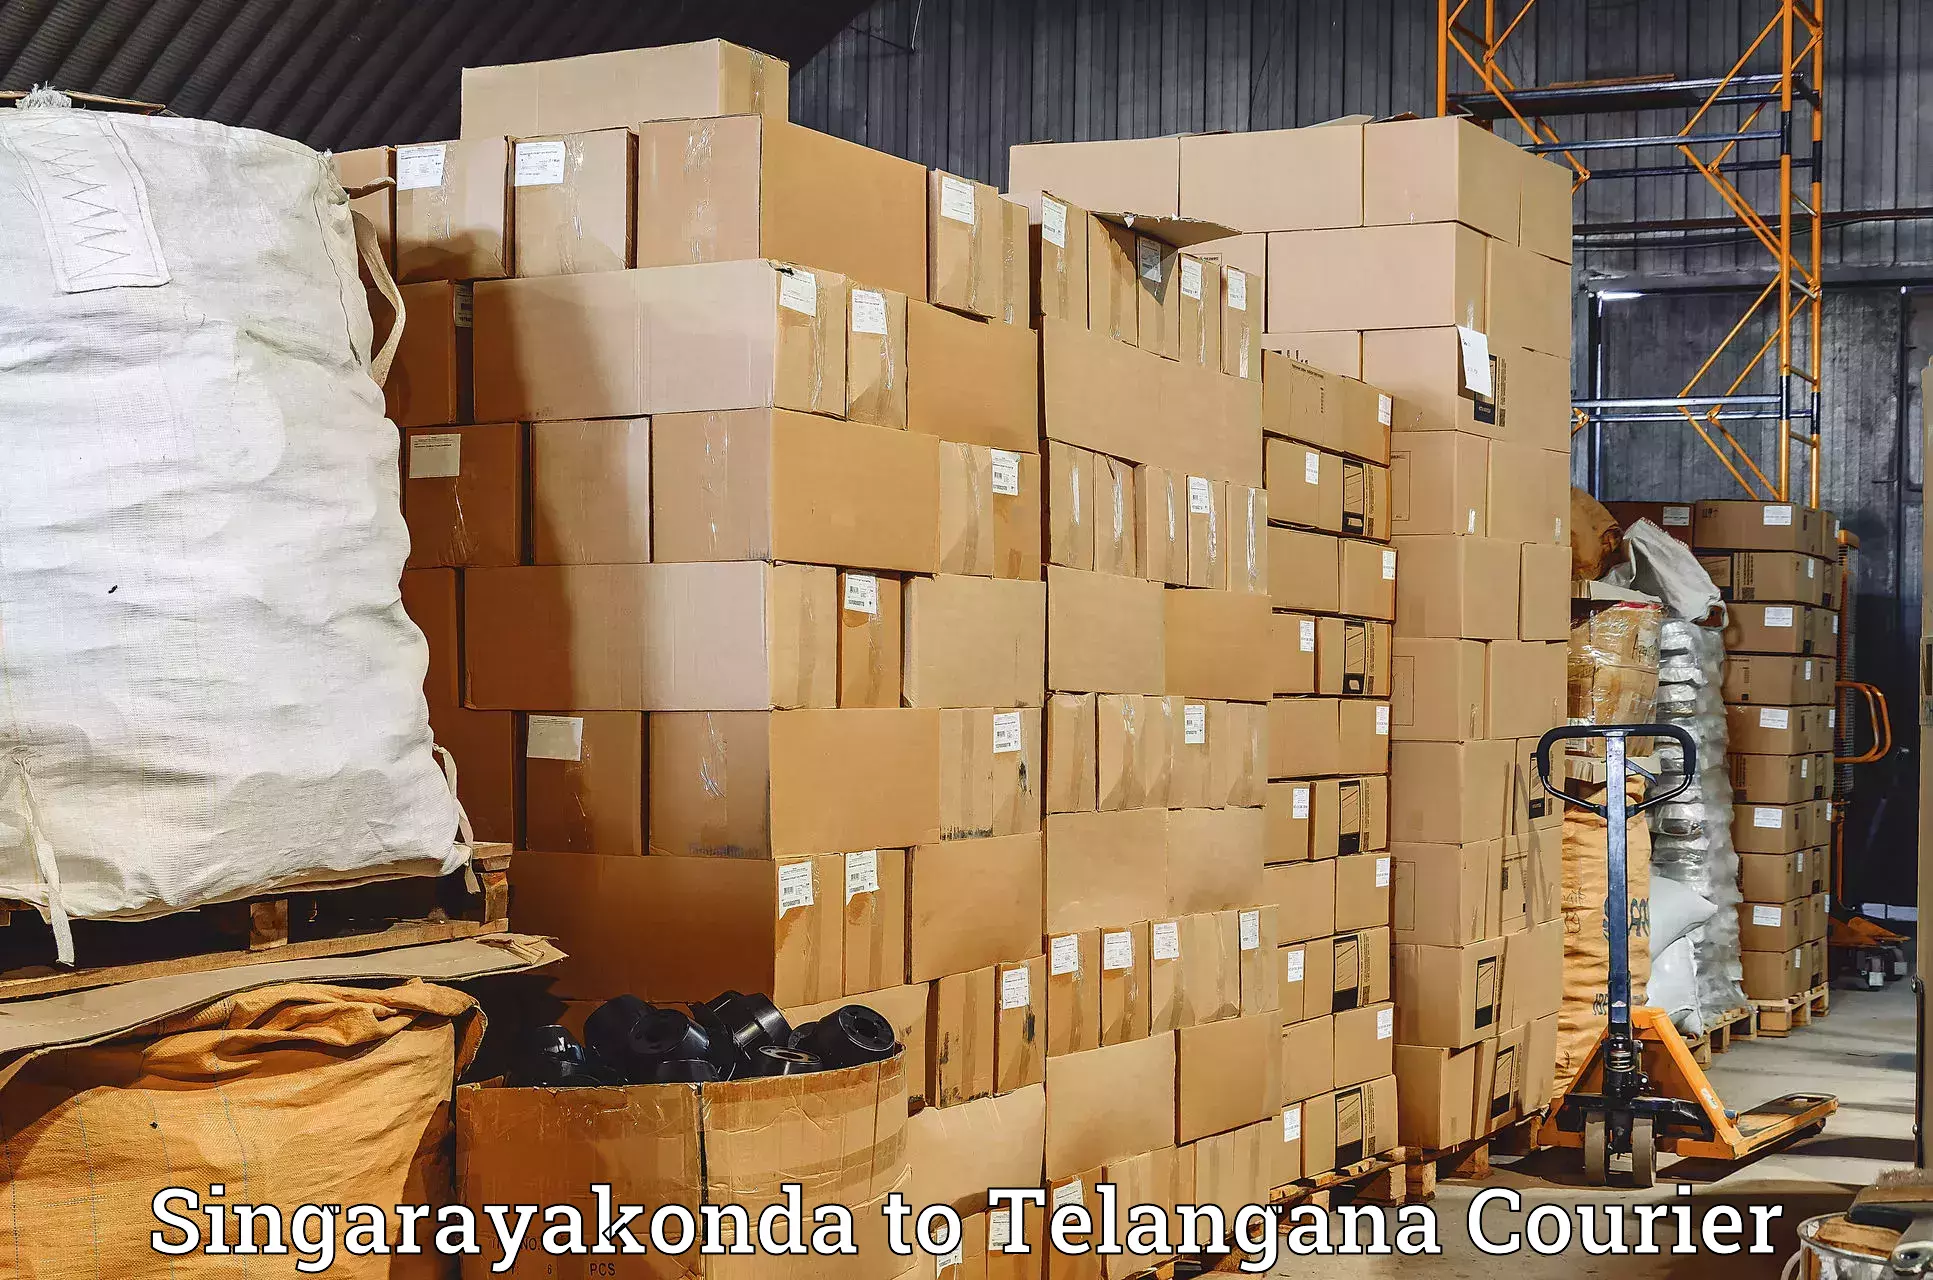 On-call courier service Singarayakonda to Sirikonda